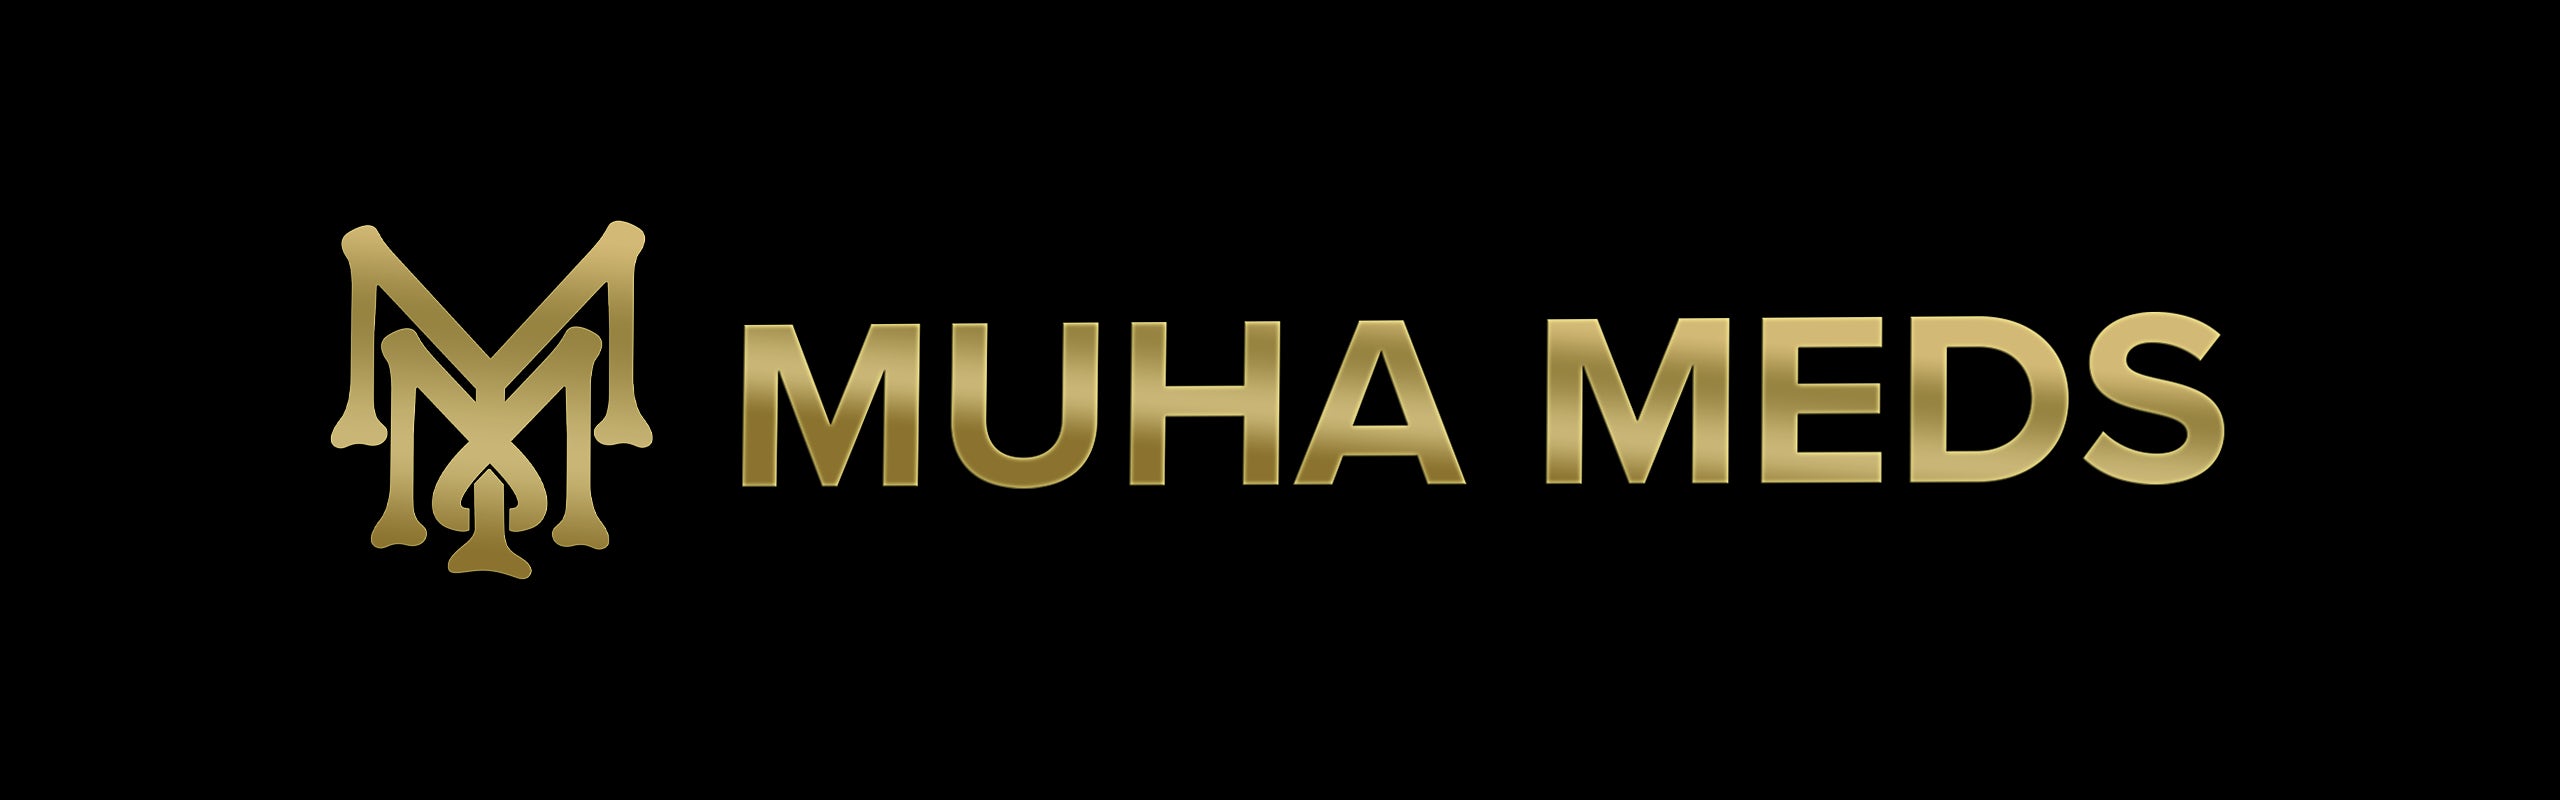 Muha Meds banner